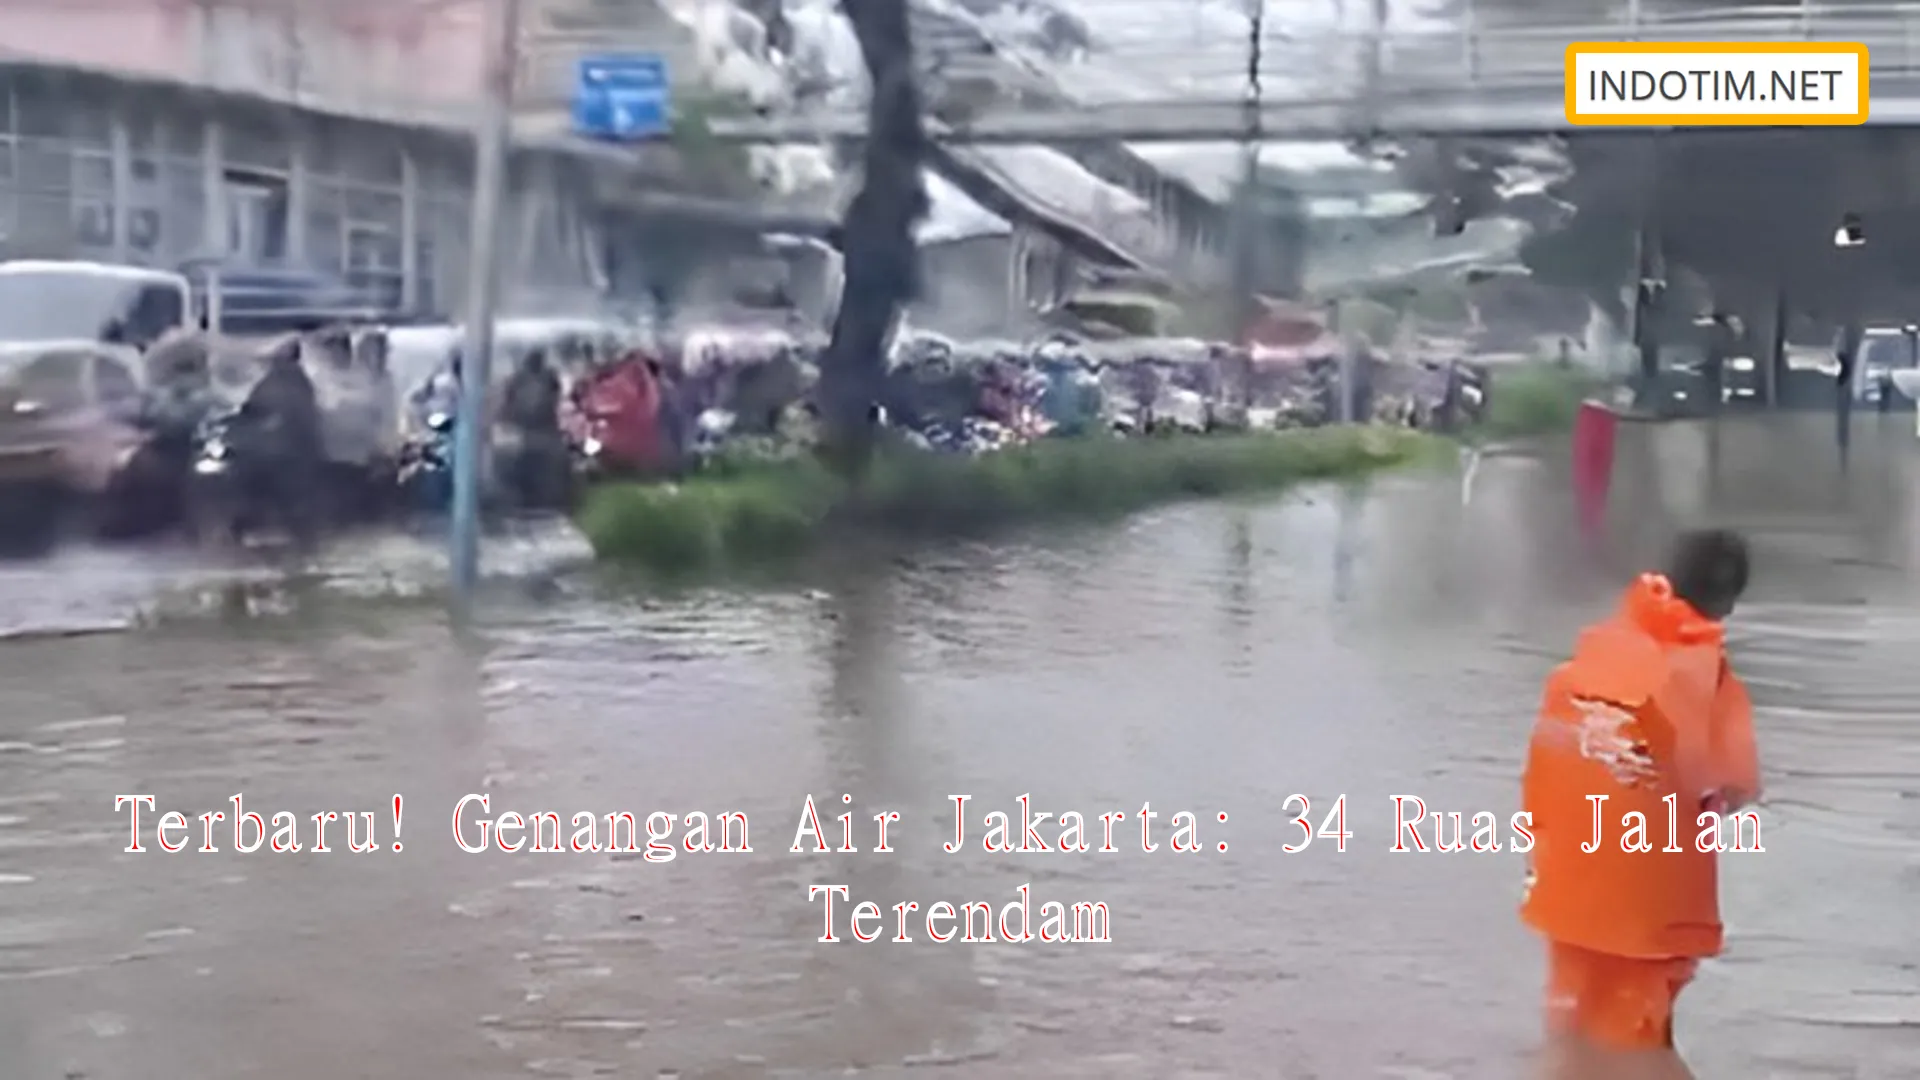 Terbaru! Genangan Air Jakarta: 34 Ruas Jalan Terendam